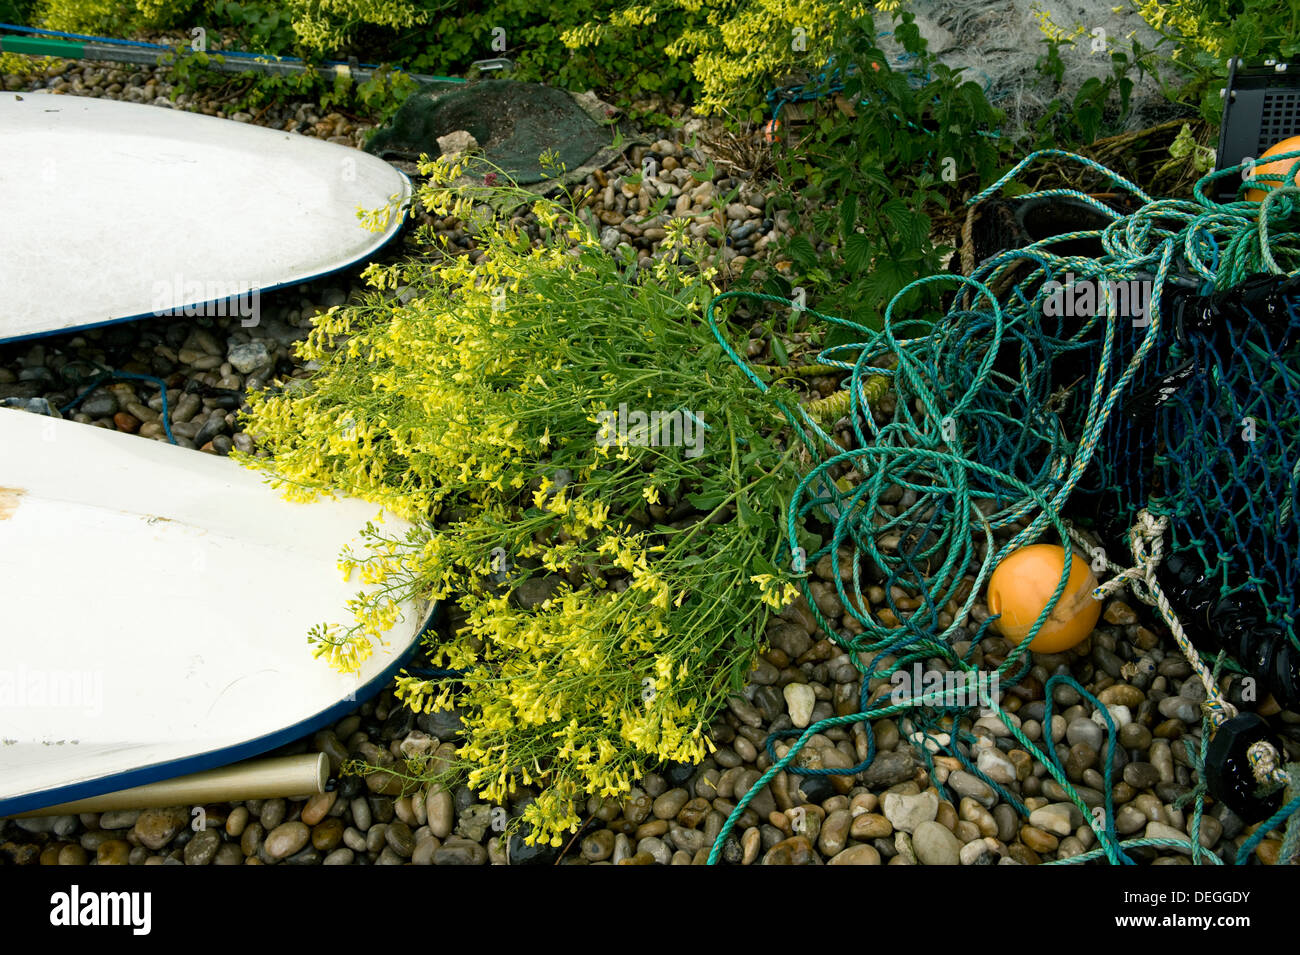 Senape nera, Brassica nigra, fiori gialli di piante tra wind surf e reti da pesca sulla spiaggia, birra, Dorset, può Foto Stock